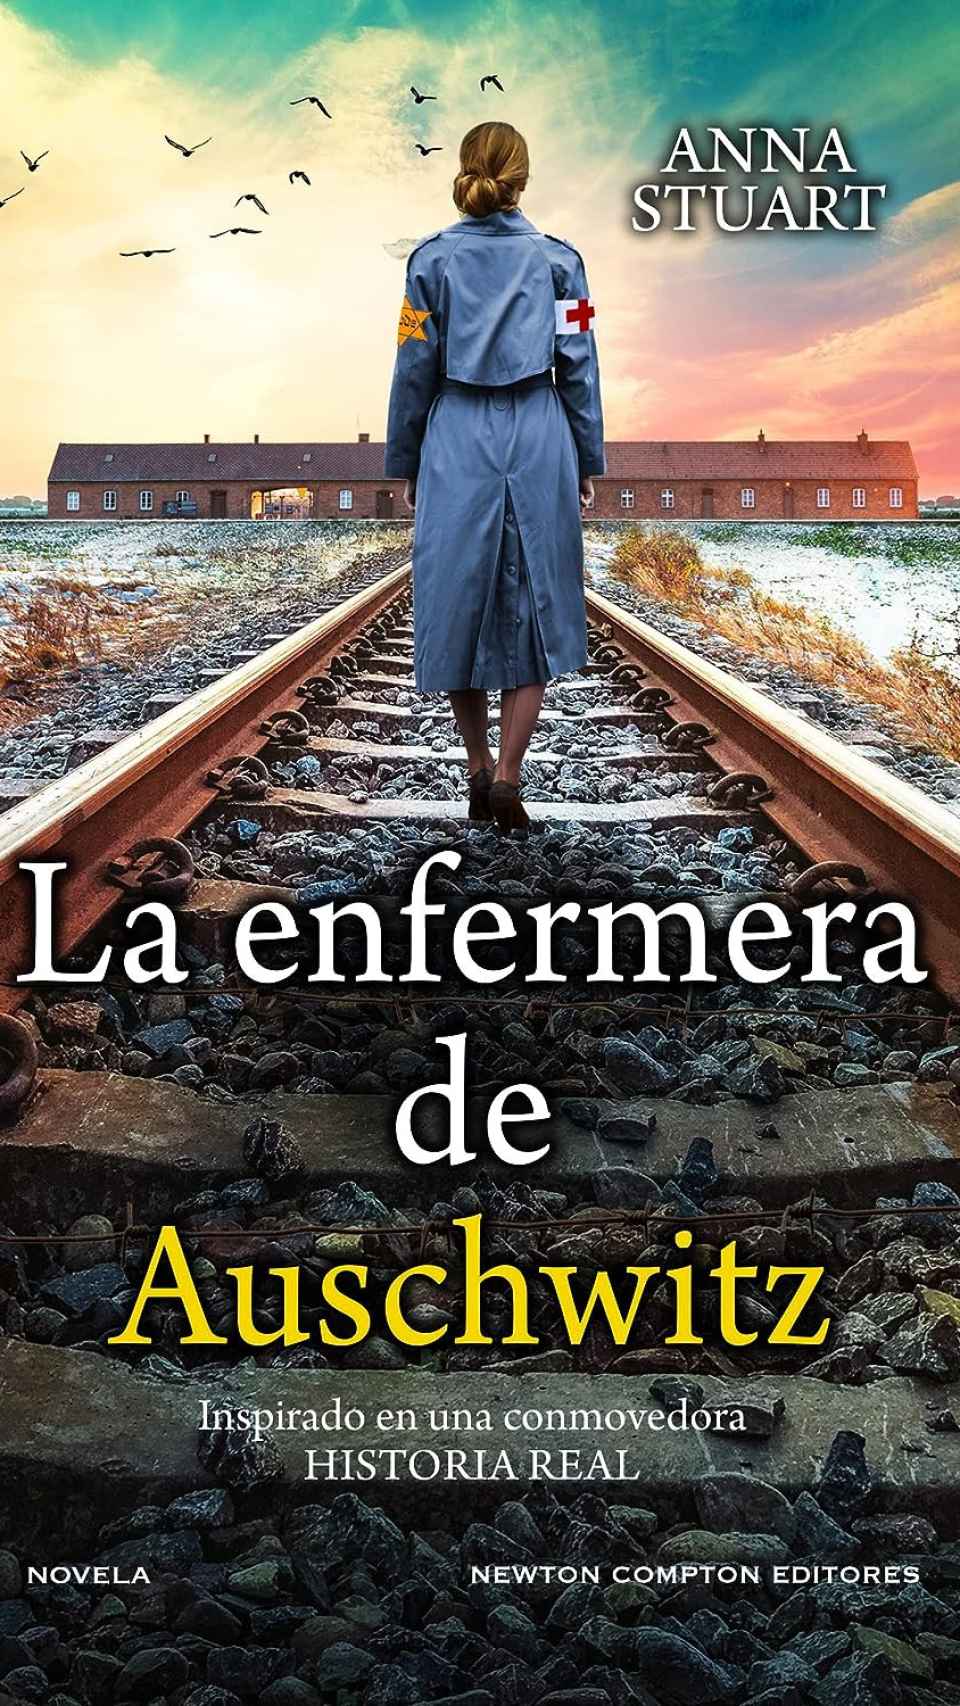 'La enfermera de Auschwitz'